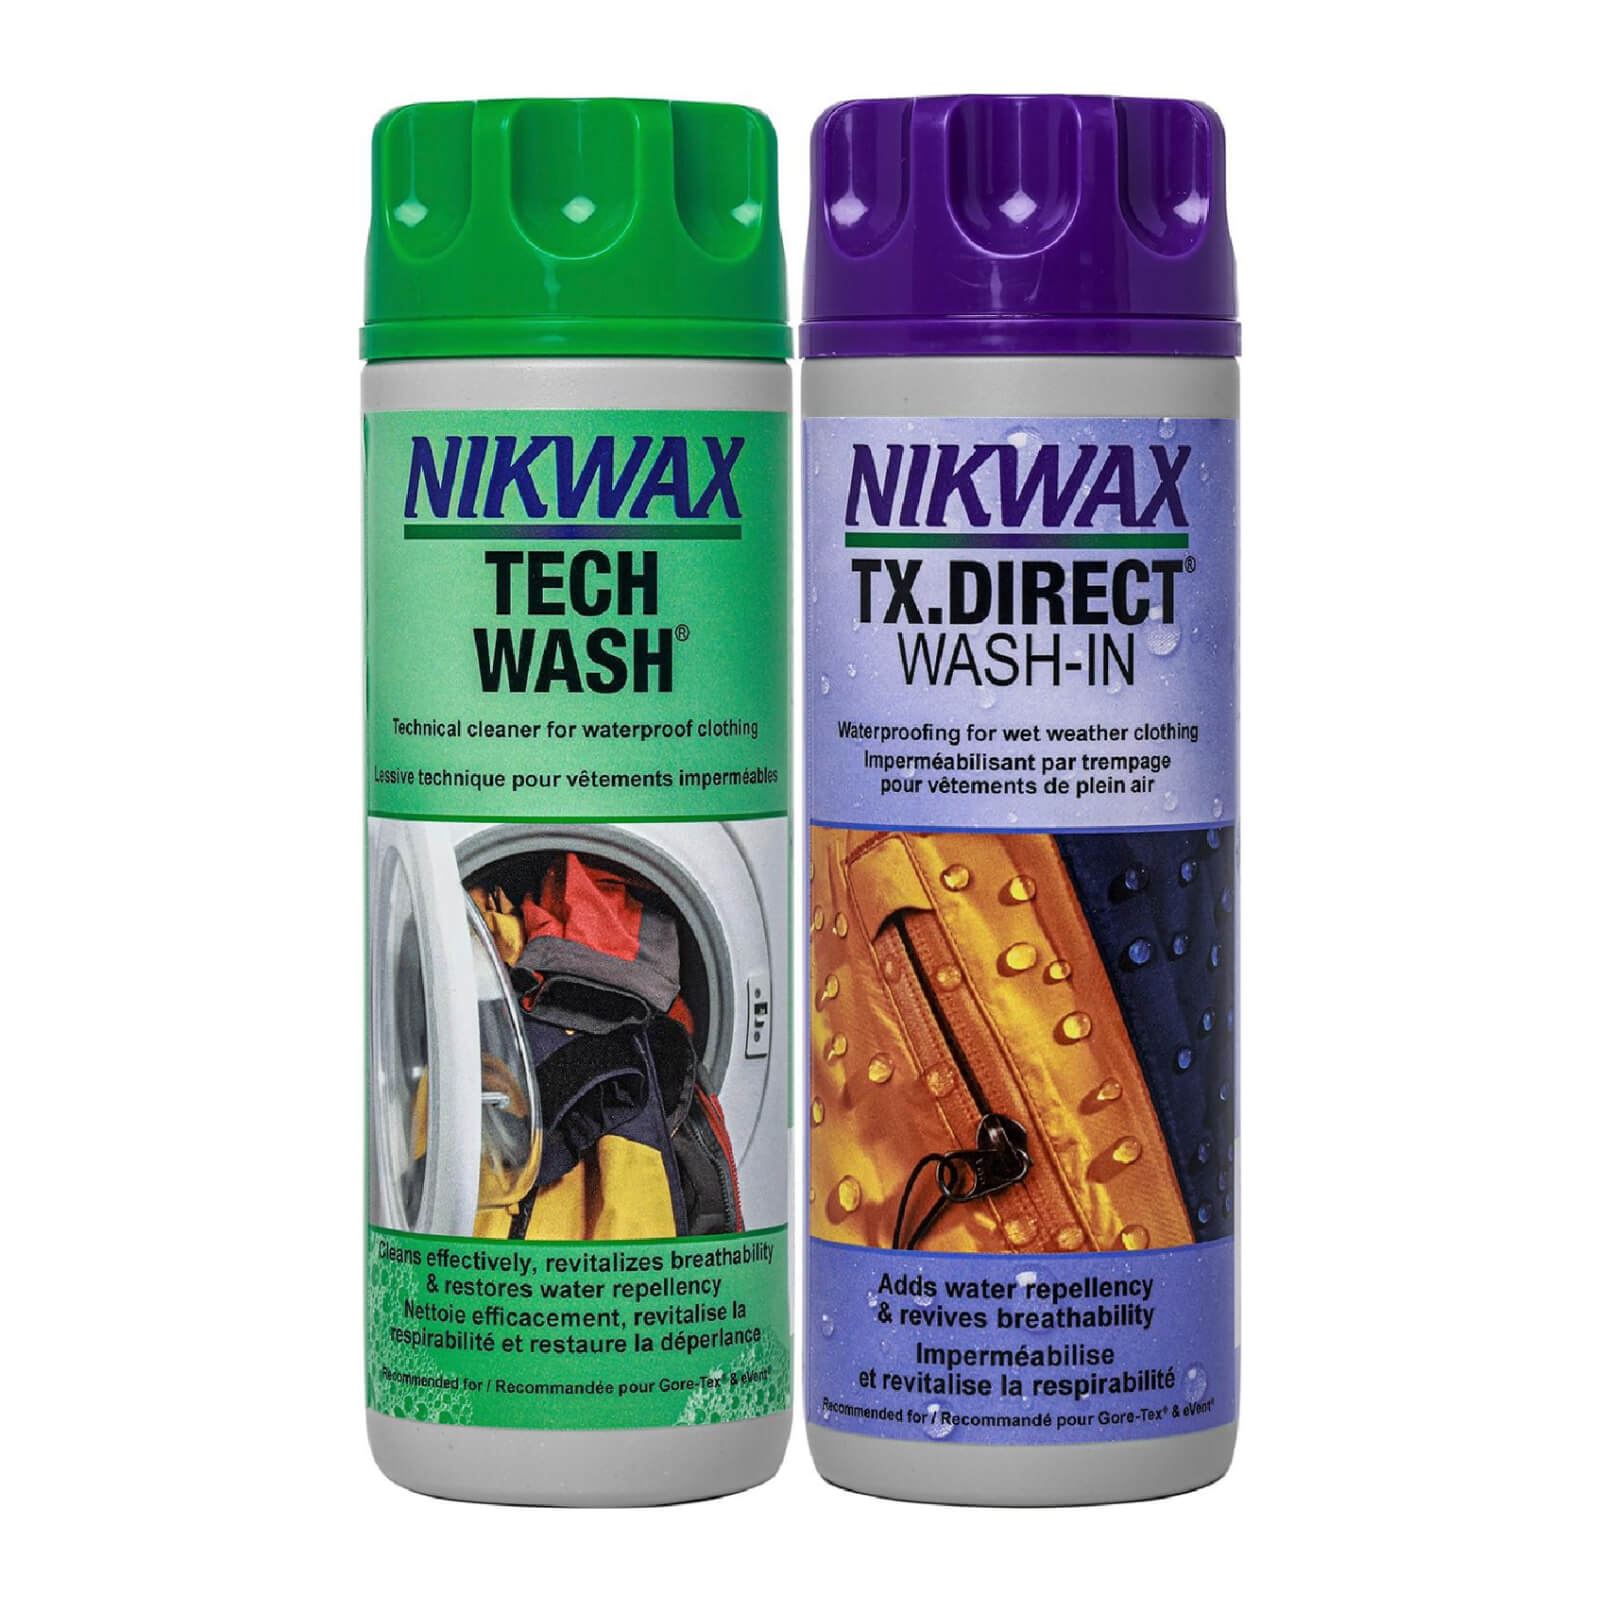 Nikwax Tech Wash and TX Direct